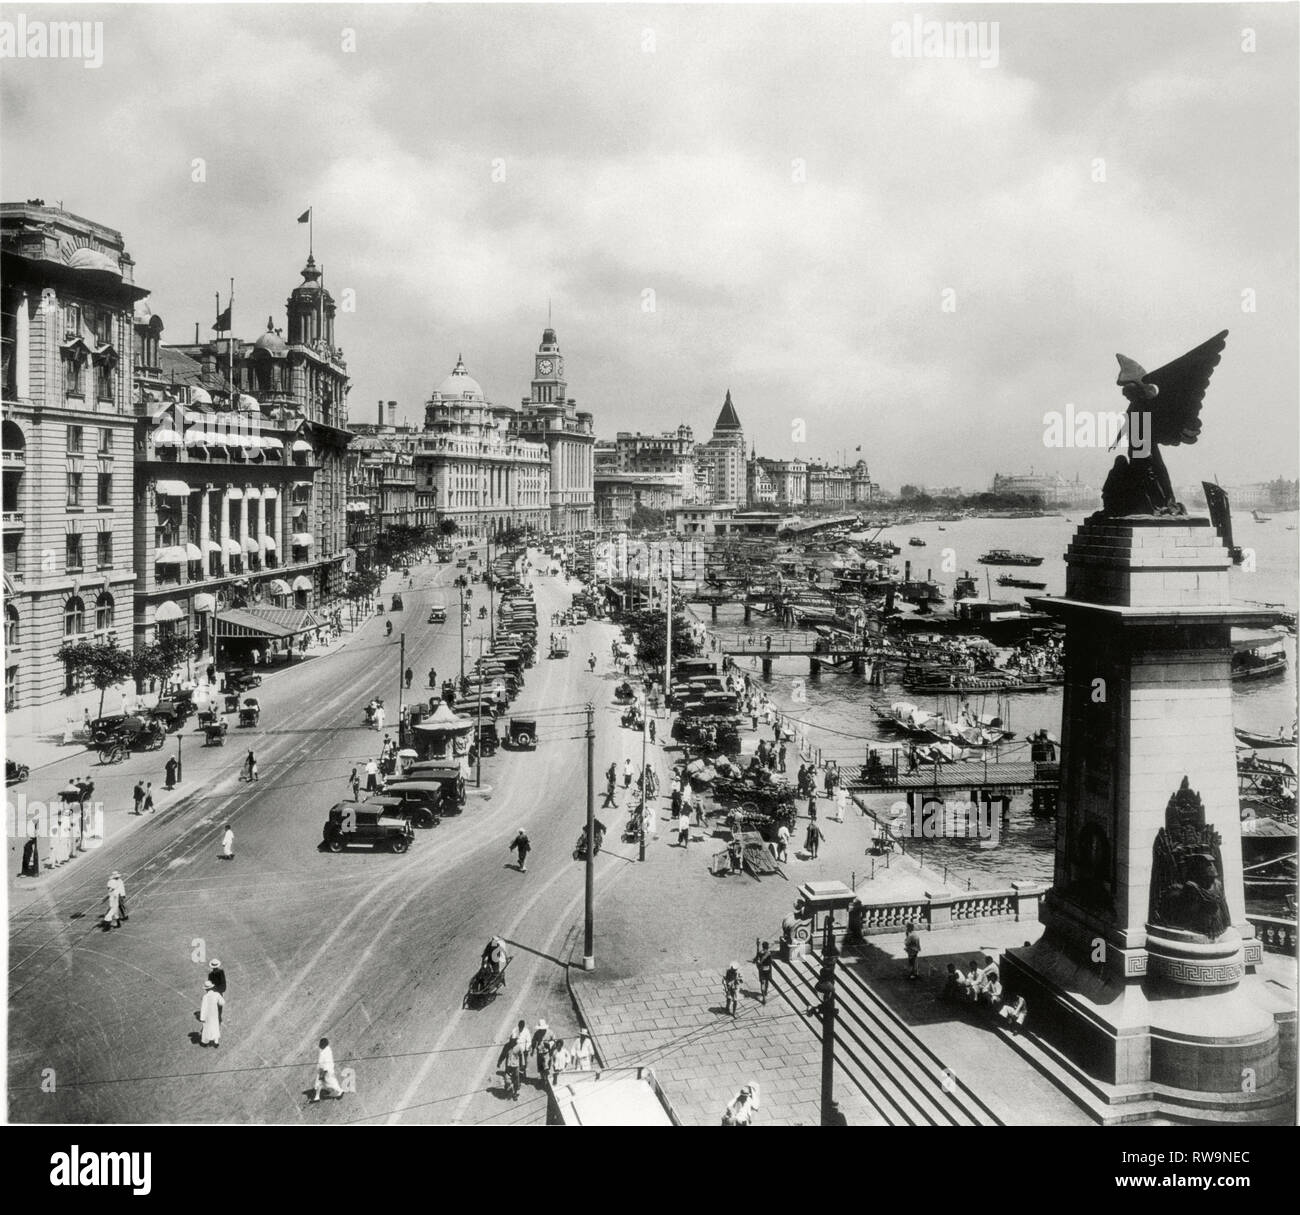 Le Bund, Shanghai, Chine, 1930 Banque D'Images